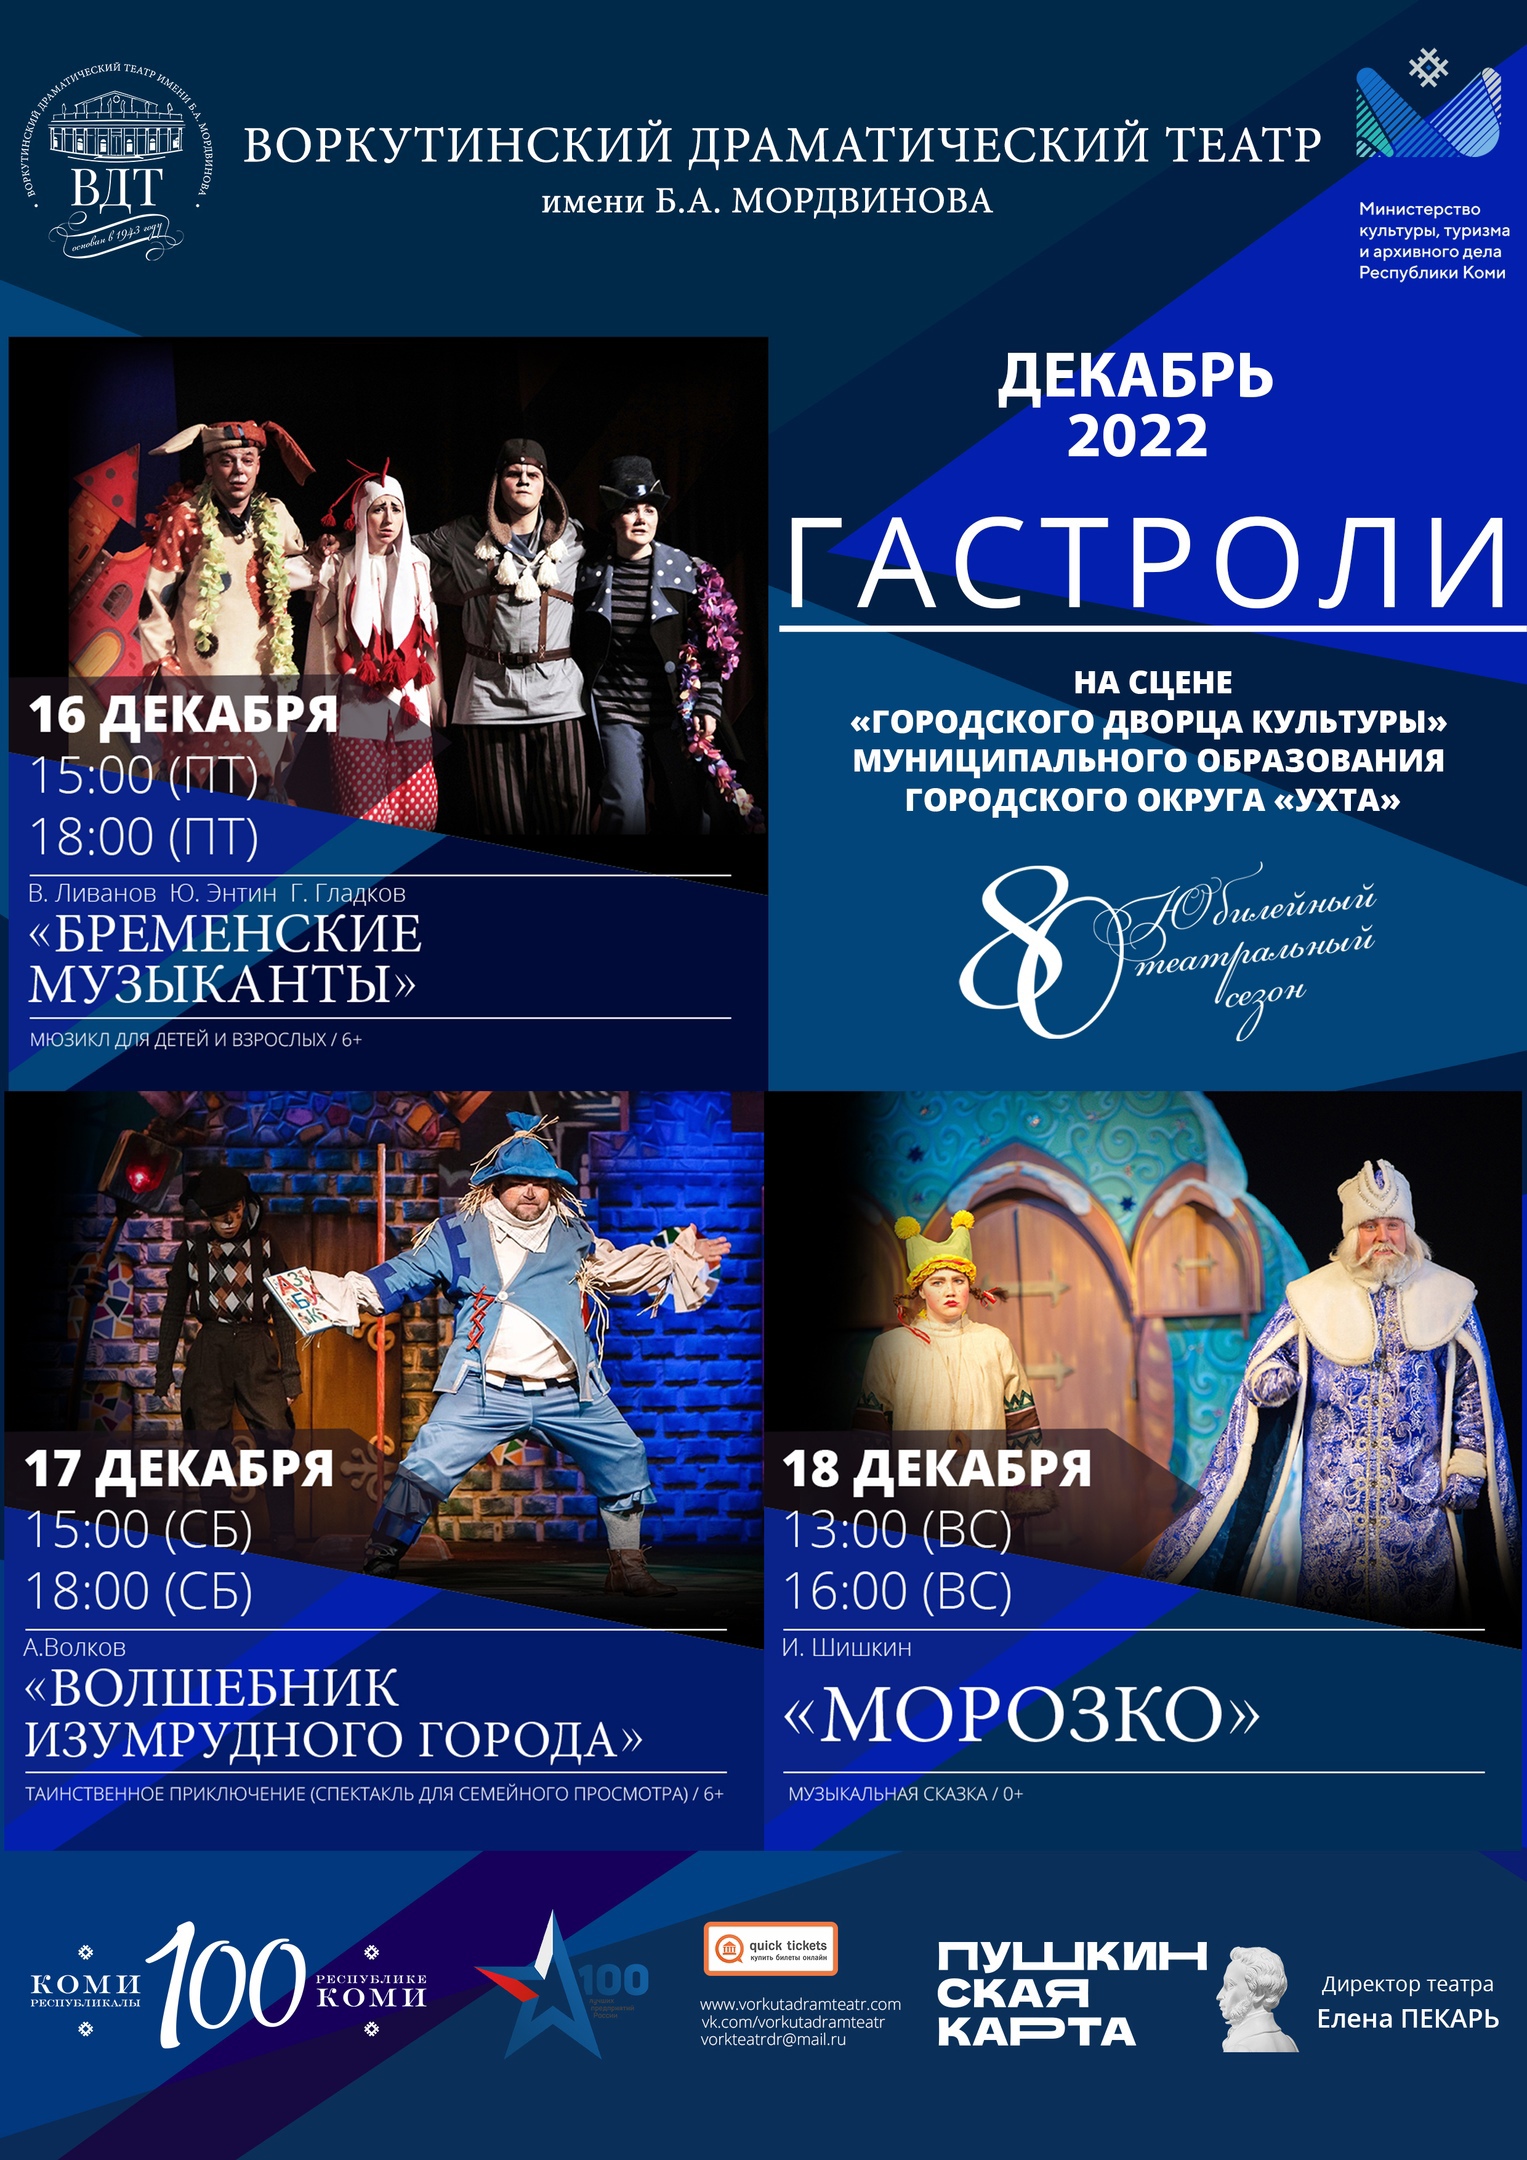 ГАСТРОЛИ Воркутинского драматического театра имени Б.А. Мордвинова, три дня - шесть спектаклей!